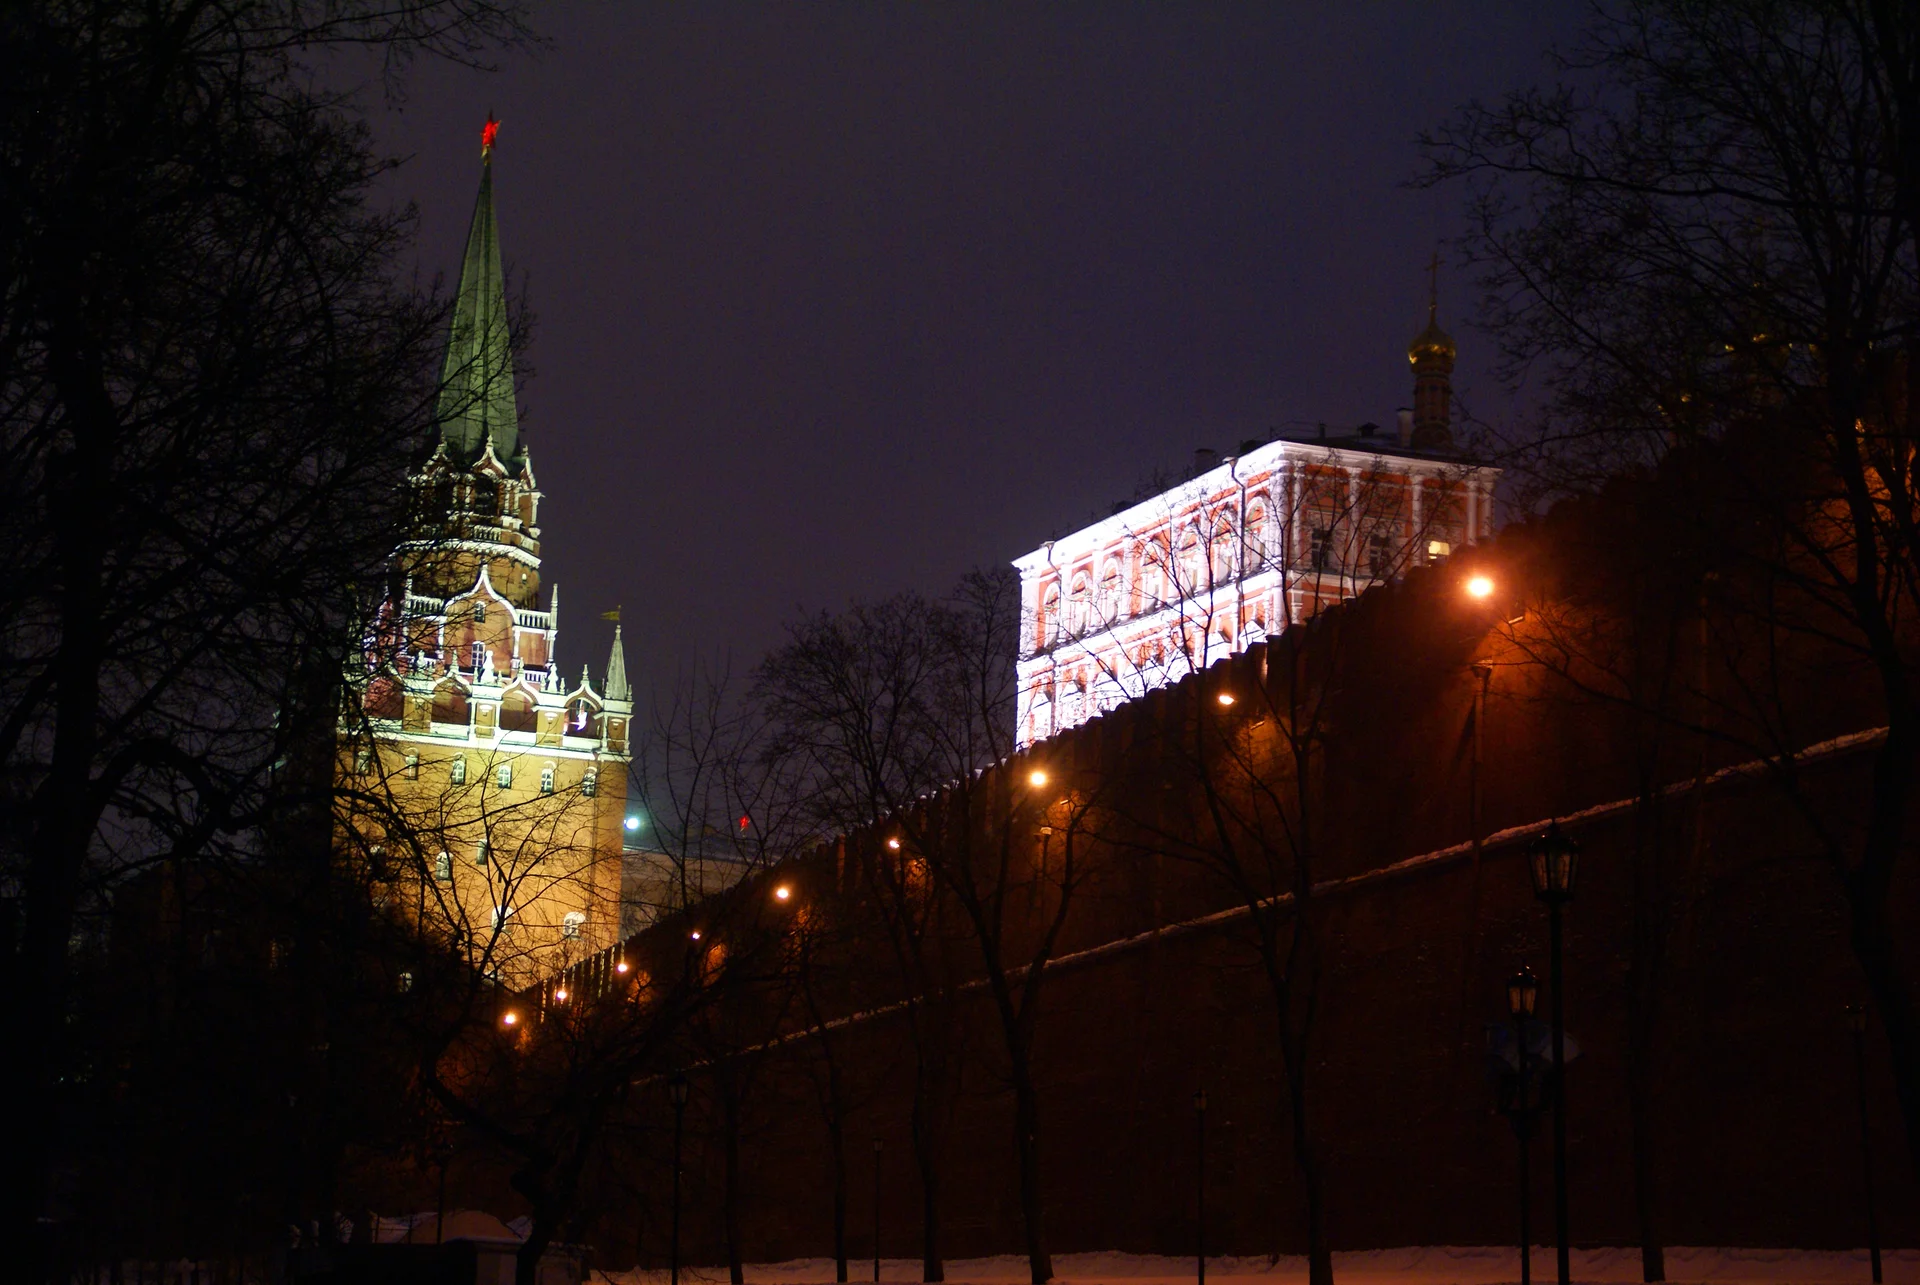 Moscou. Le Kremlin. La Troïtsnaia bachnia (tour de la Trinité).